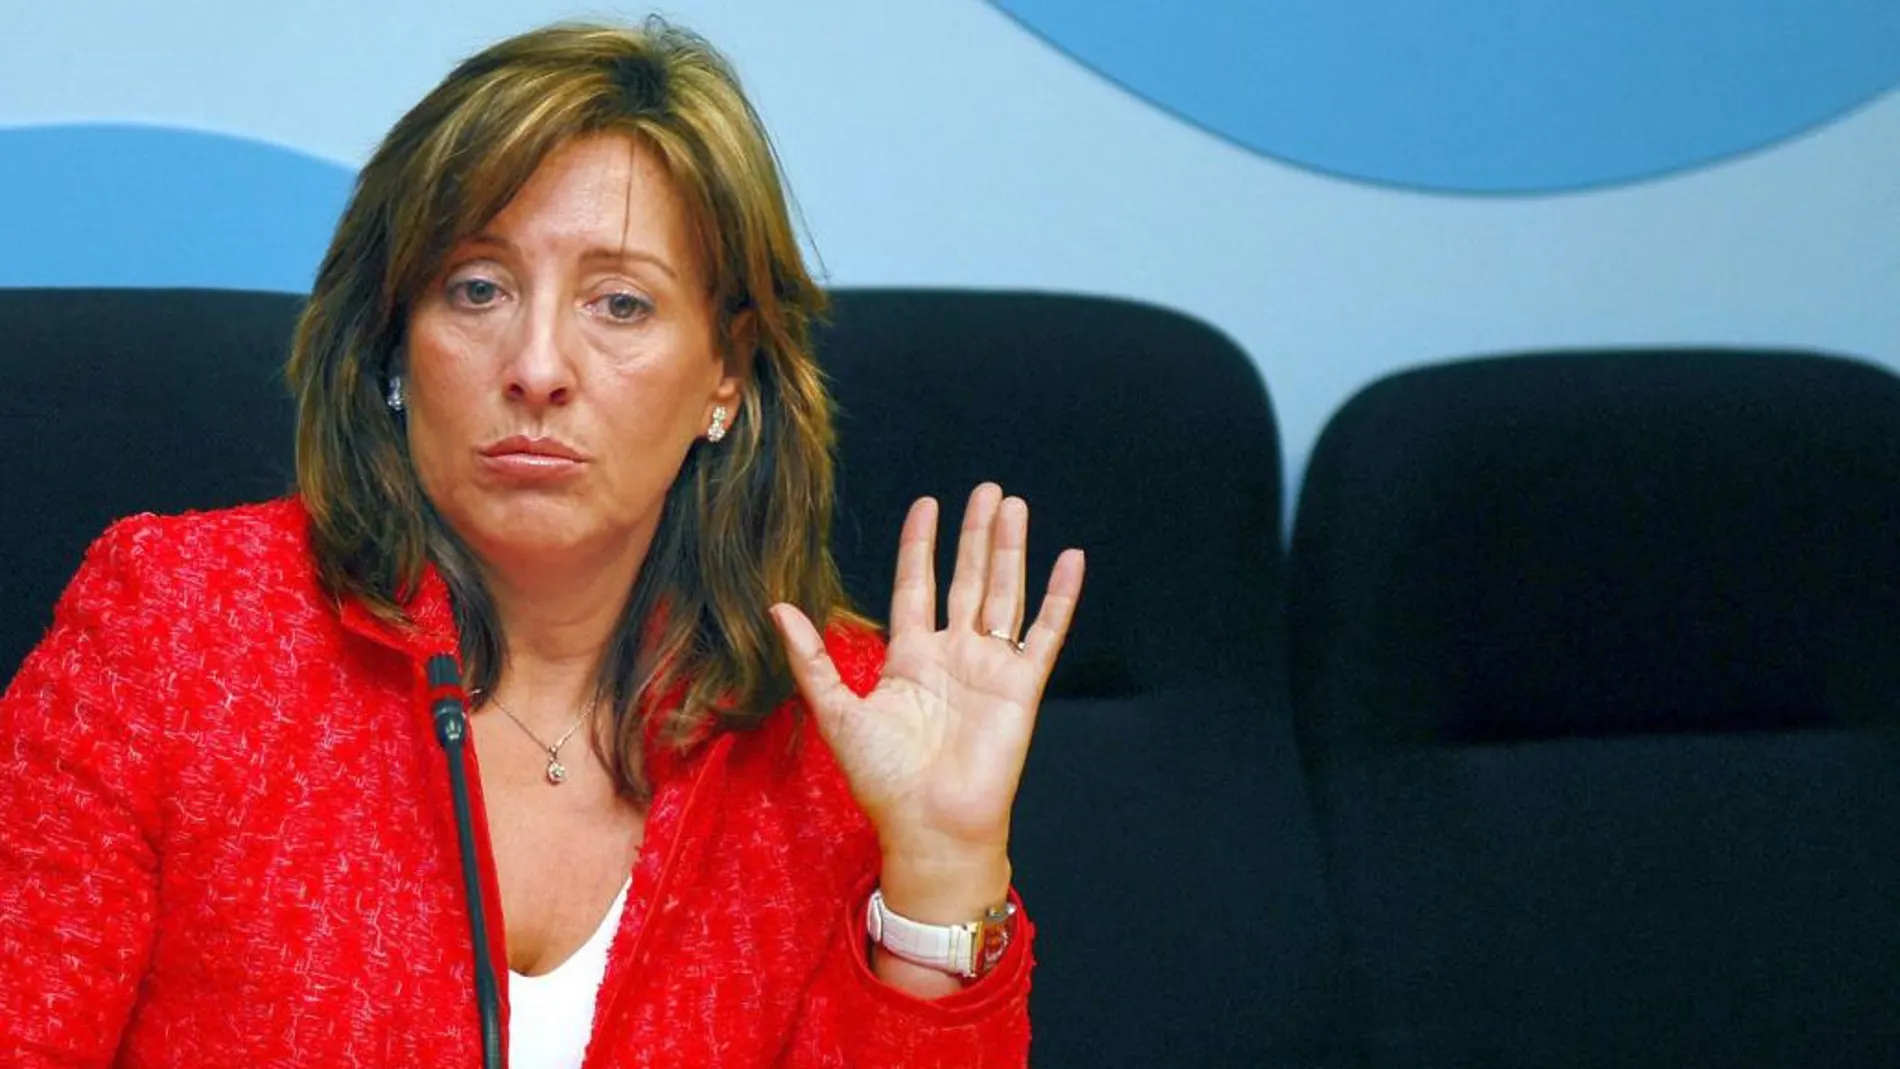 La ex alcaldesa de Jerez de la Frontera Pilar Sánchez ingresará en prisión de forma inminenete